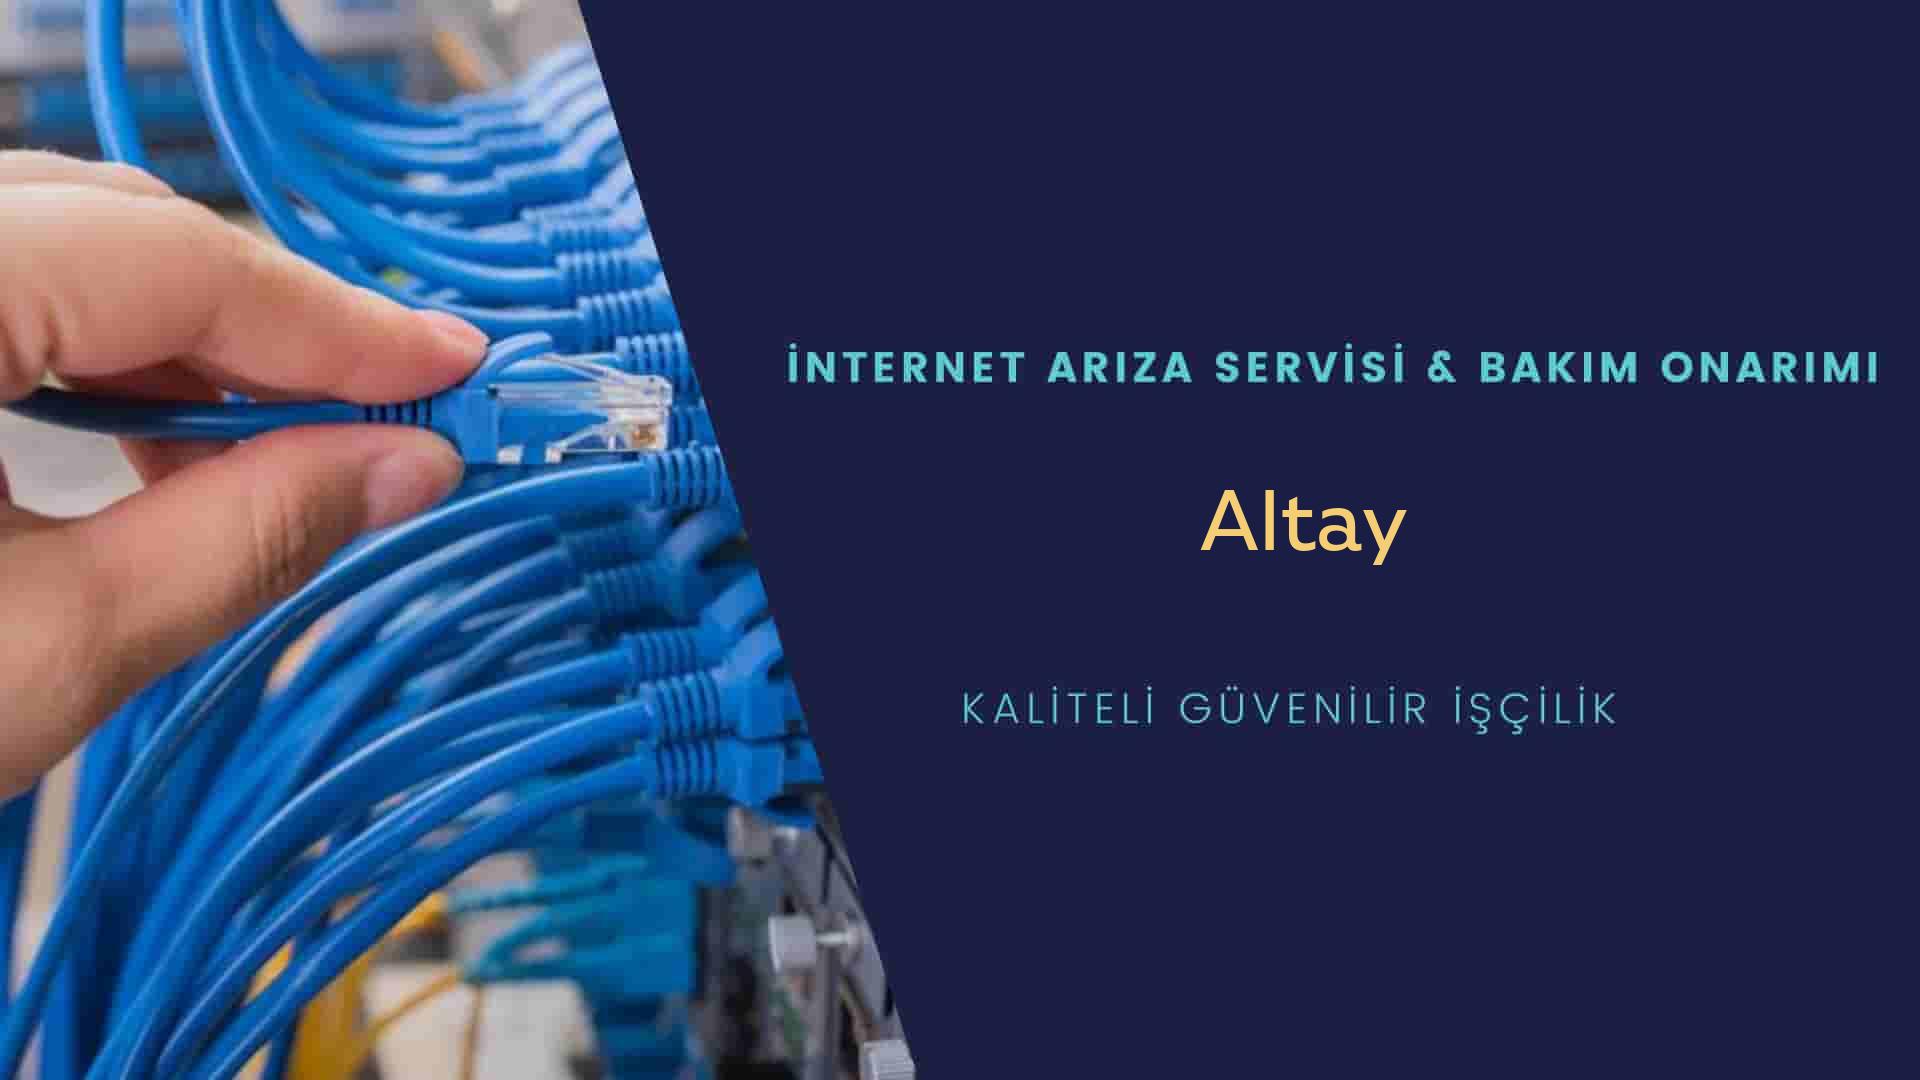 Altay  internet kablosu çekimi yapan yerler veya elektrikçiler mi? arıyorsunuz doğru yerdesiniz o zaman sizlere 7/24 yardımcı olacak profesyonel ustalarımız bir telefon kadar yakındır size.